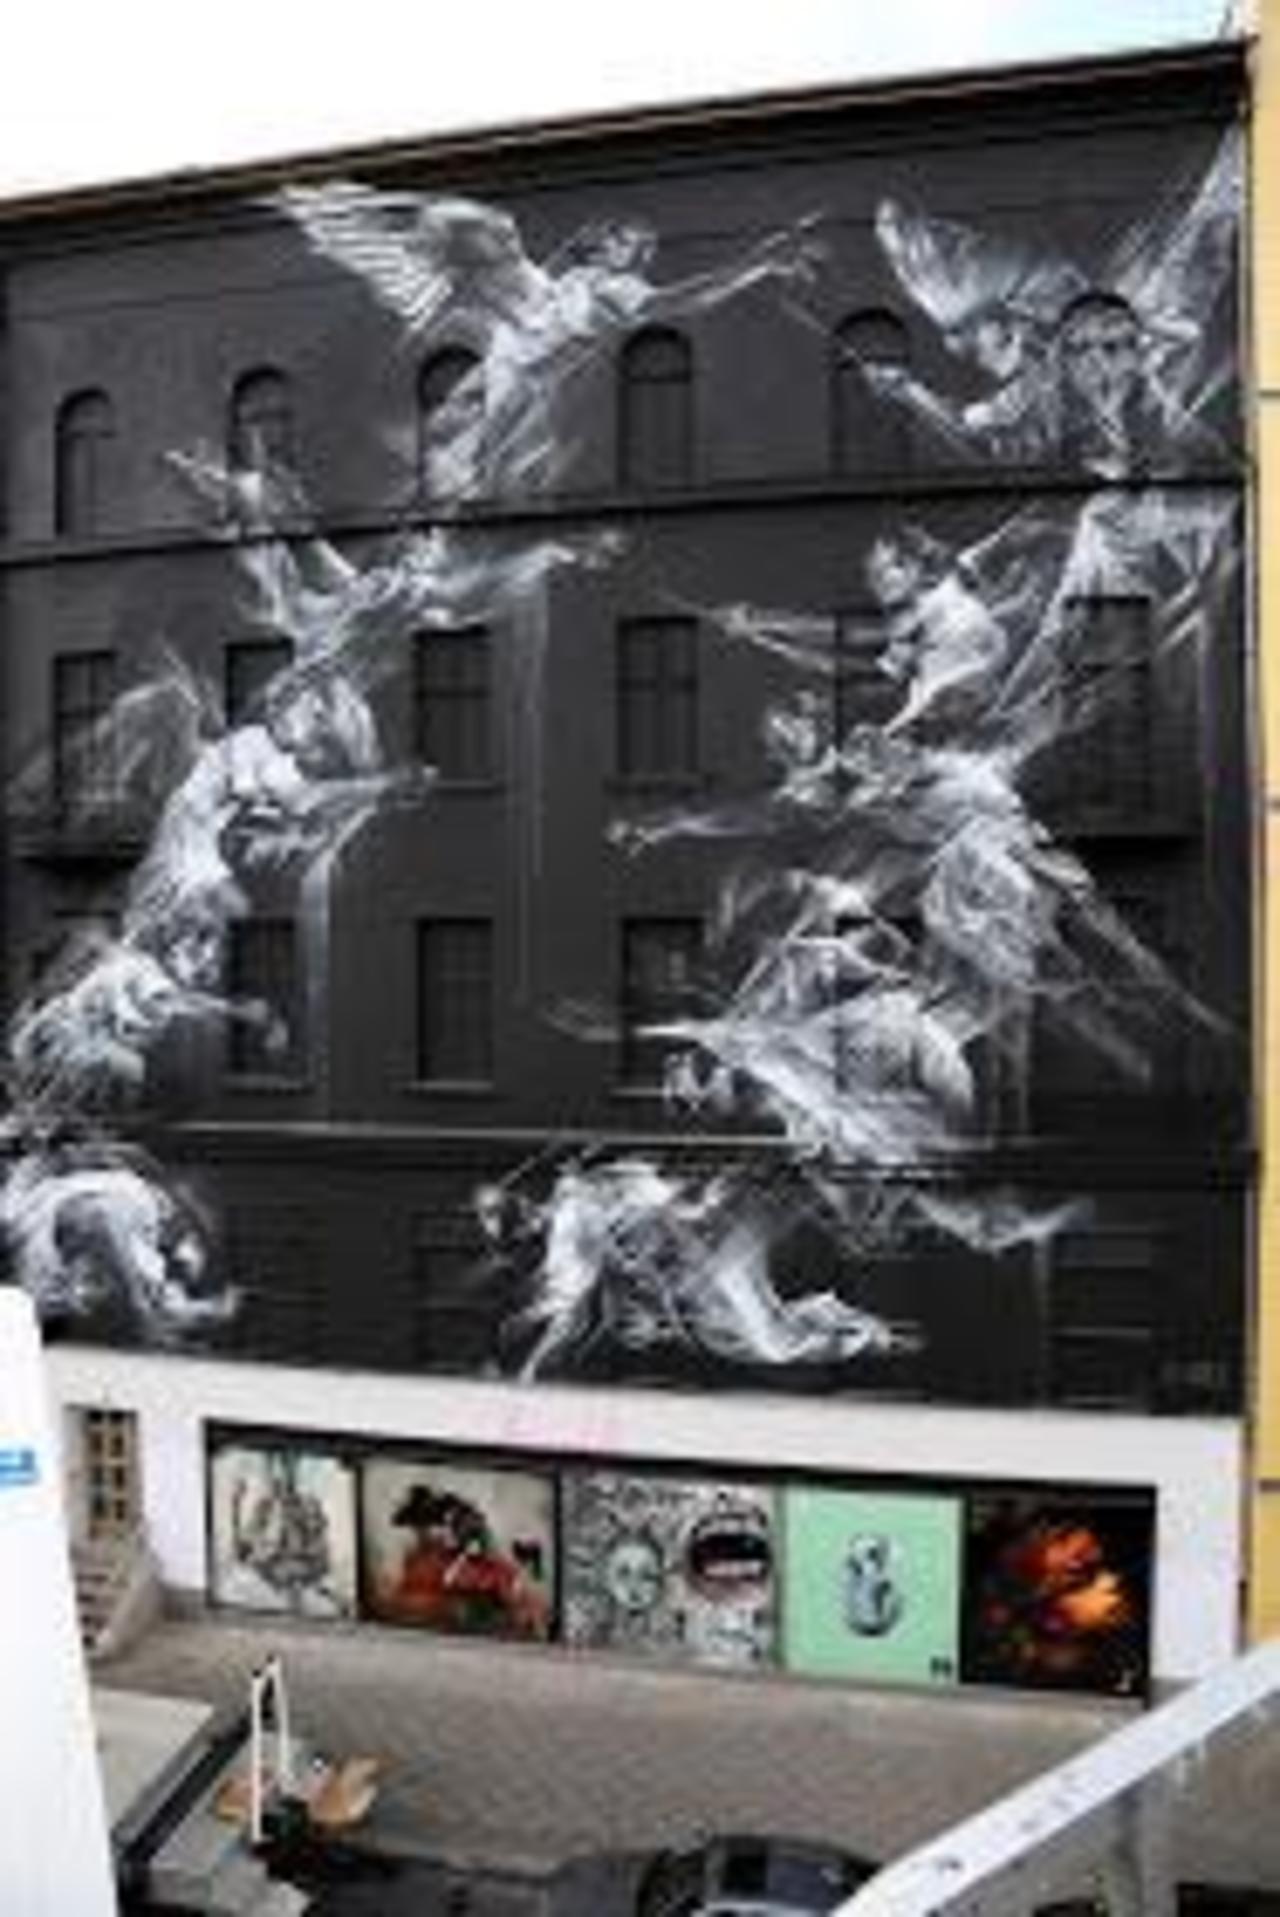 RT @richardbanfa: Li-Hill paints a massive #streetart #mural in #Berlin, #Germany #switch #graffiti #arte #art http://t.co/S7IKKzsW5A